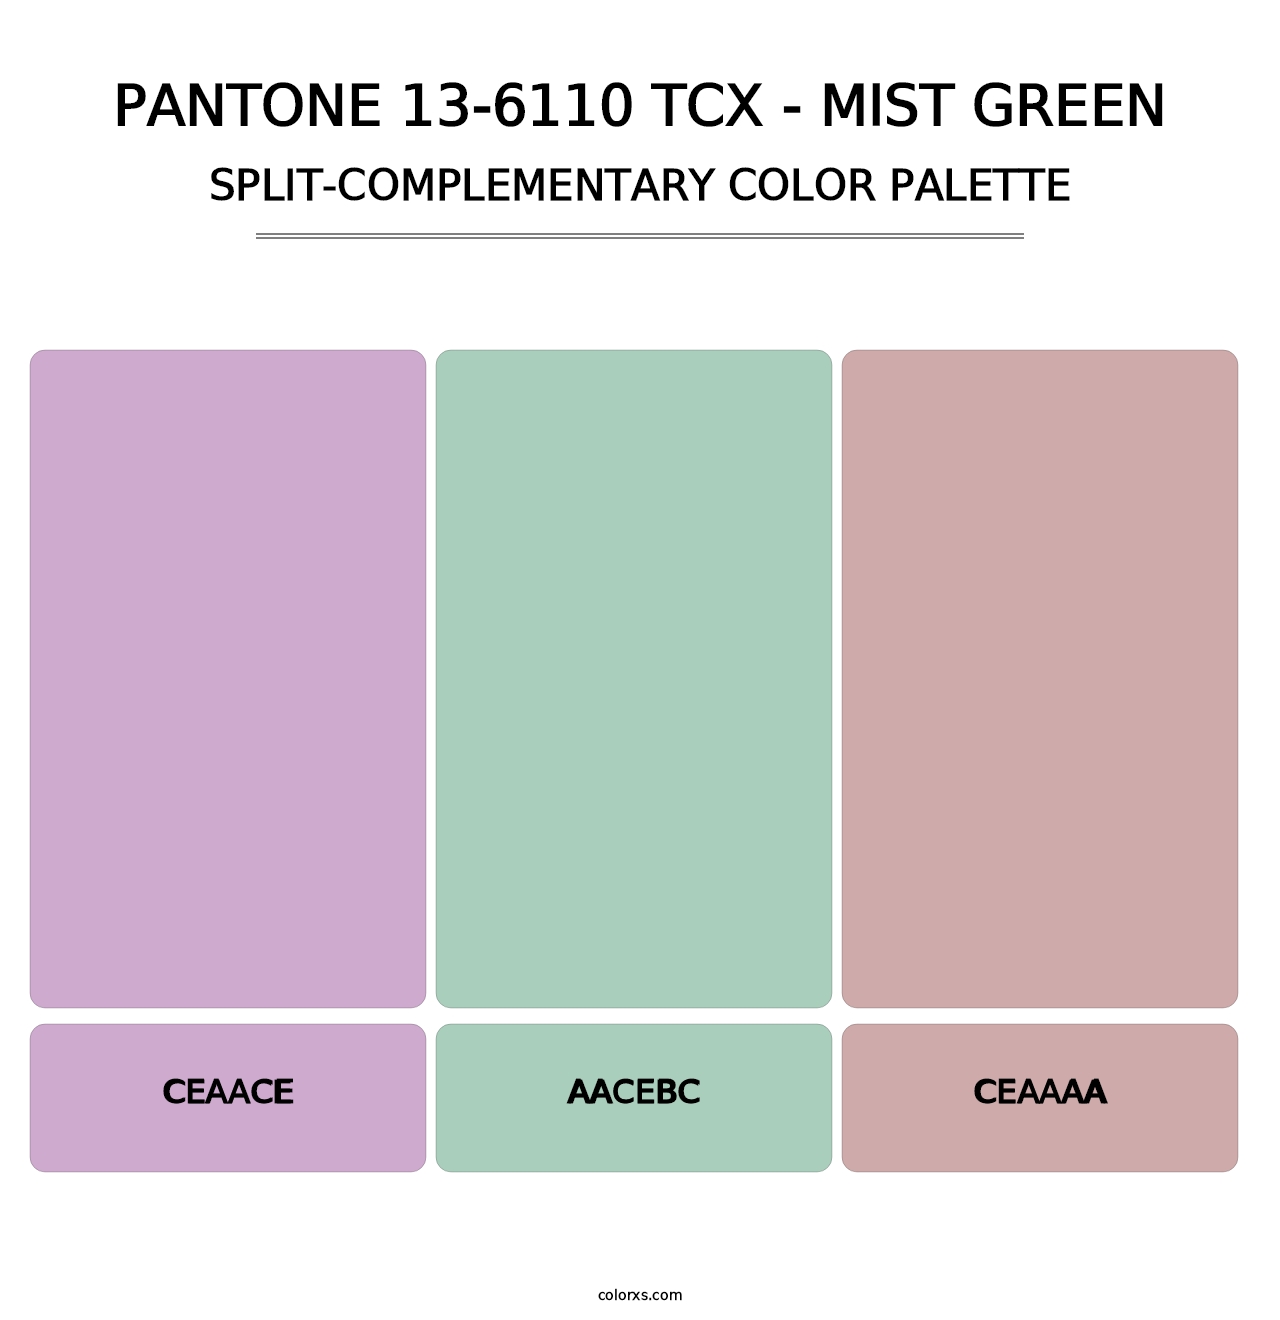 PANTONE 13-6110 TCX - Mist Green - Split-Complementary Color Palette